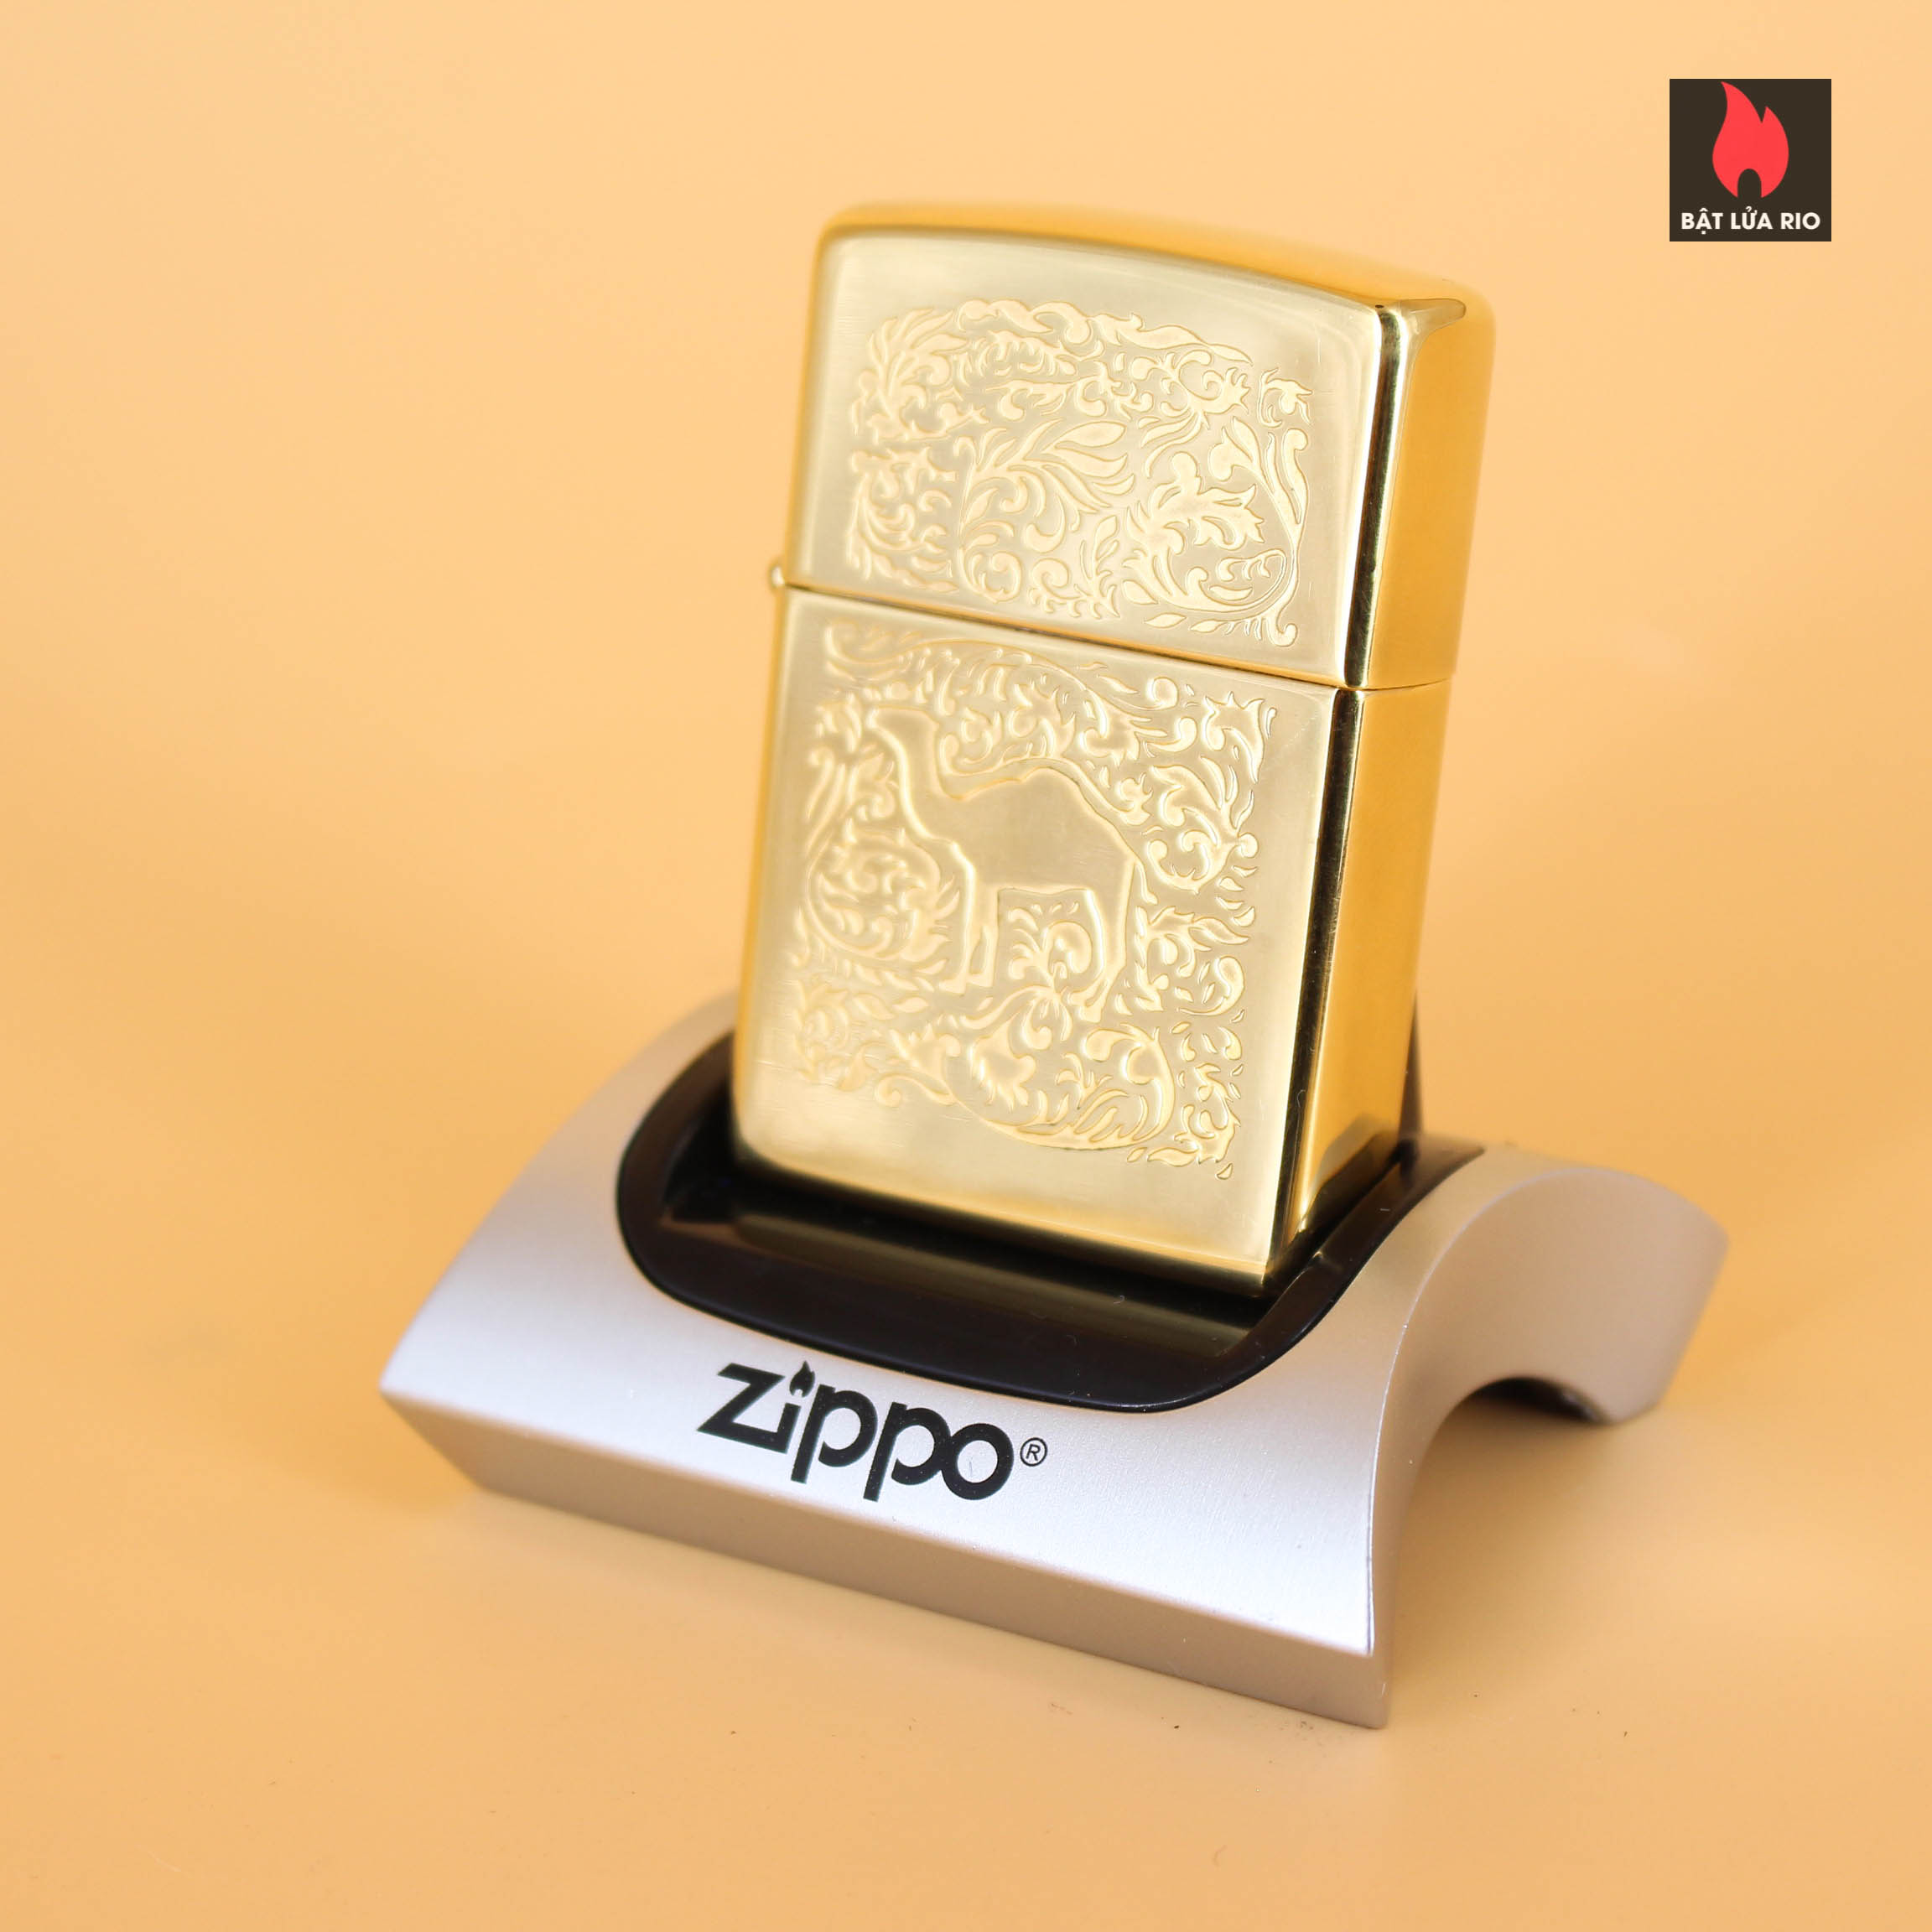 Zippo La Mã 1995 - Camel Lighter - Gold Plate 22K 5